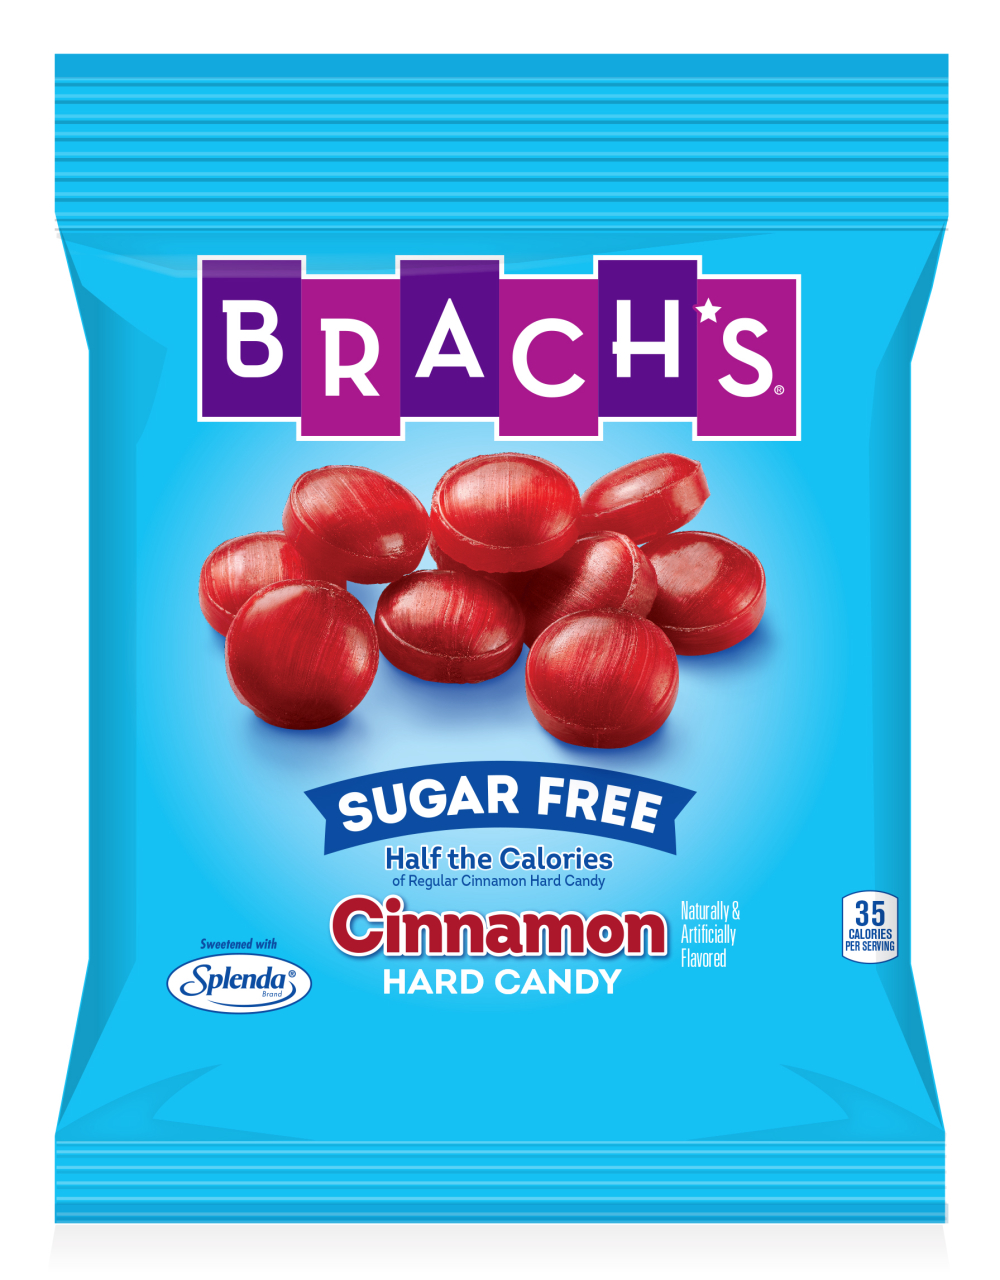 Brachs Sugar Free Cinnamon Hard Candy 3.5oz bag